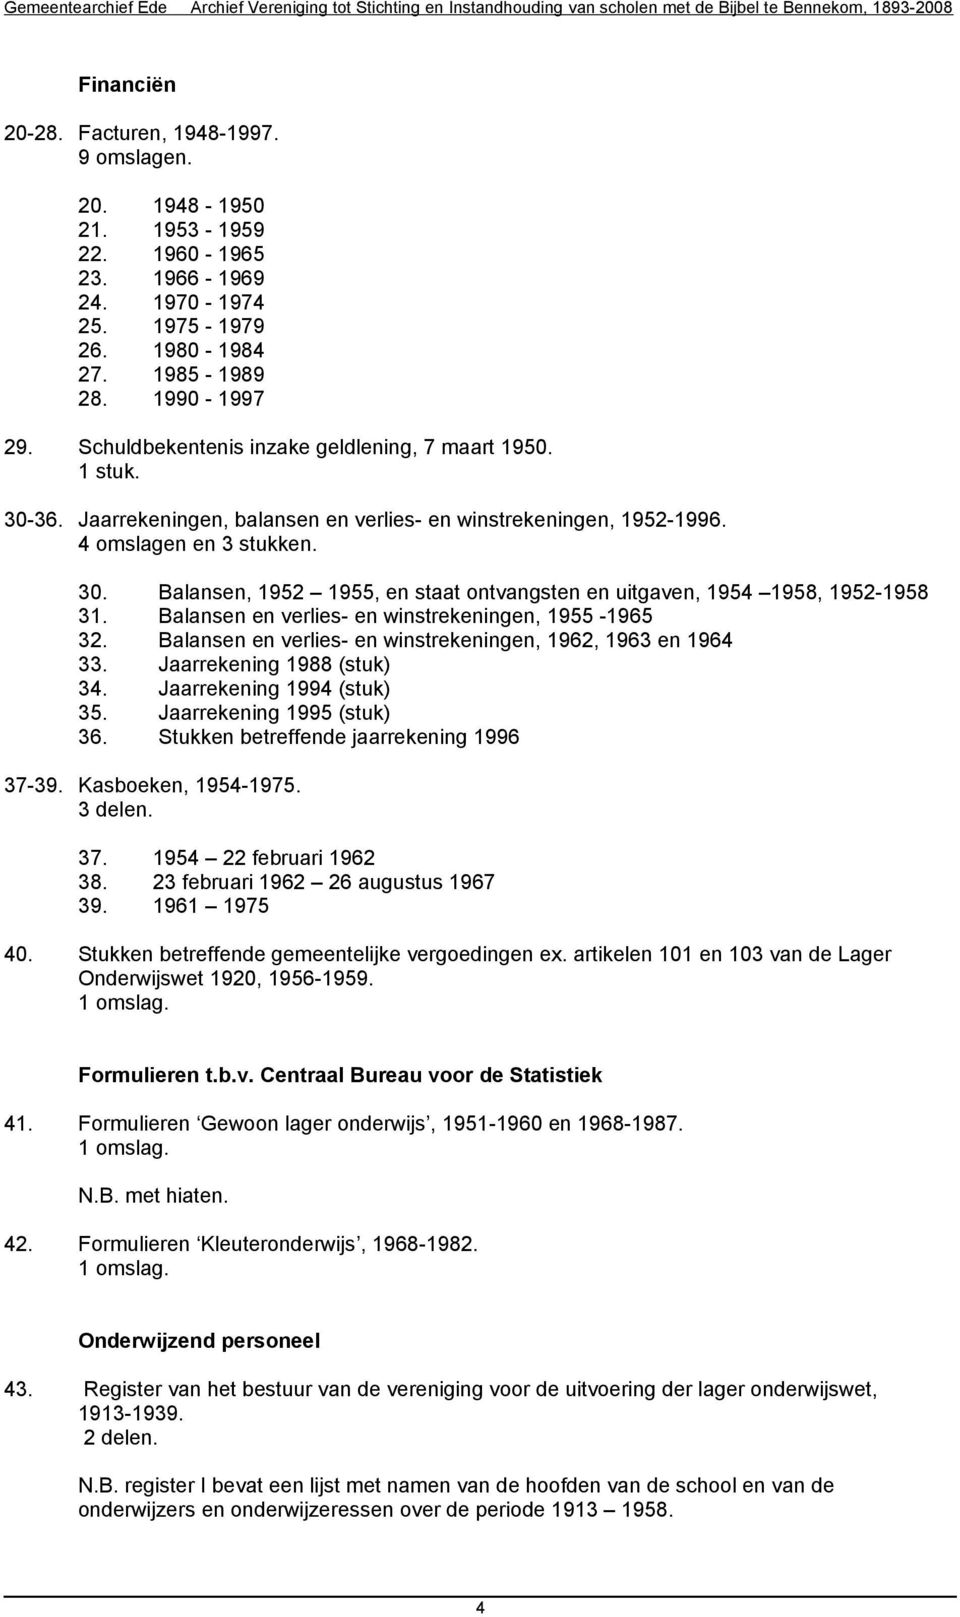 Balansen en verlies- en winstrekeningen, 1955-1965 32. Balansen en verlies- en winstrekeningen, 1962, 1963 en 1964 33. Jaarrekening 1988 (stuk) 34. Jaarrekening 1994 (stuk) 35.